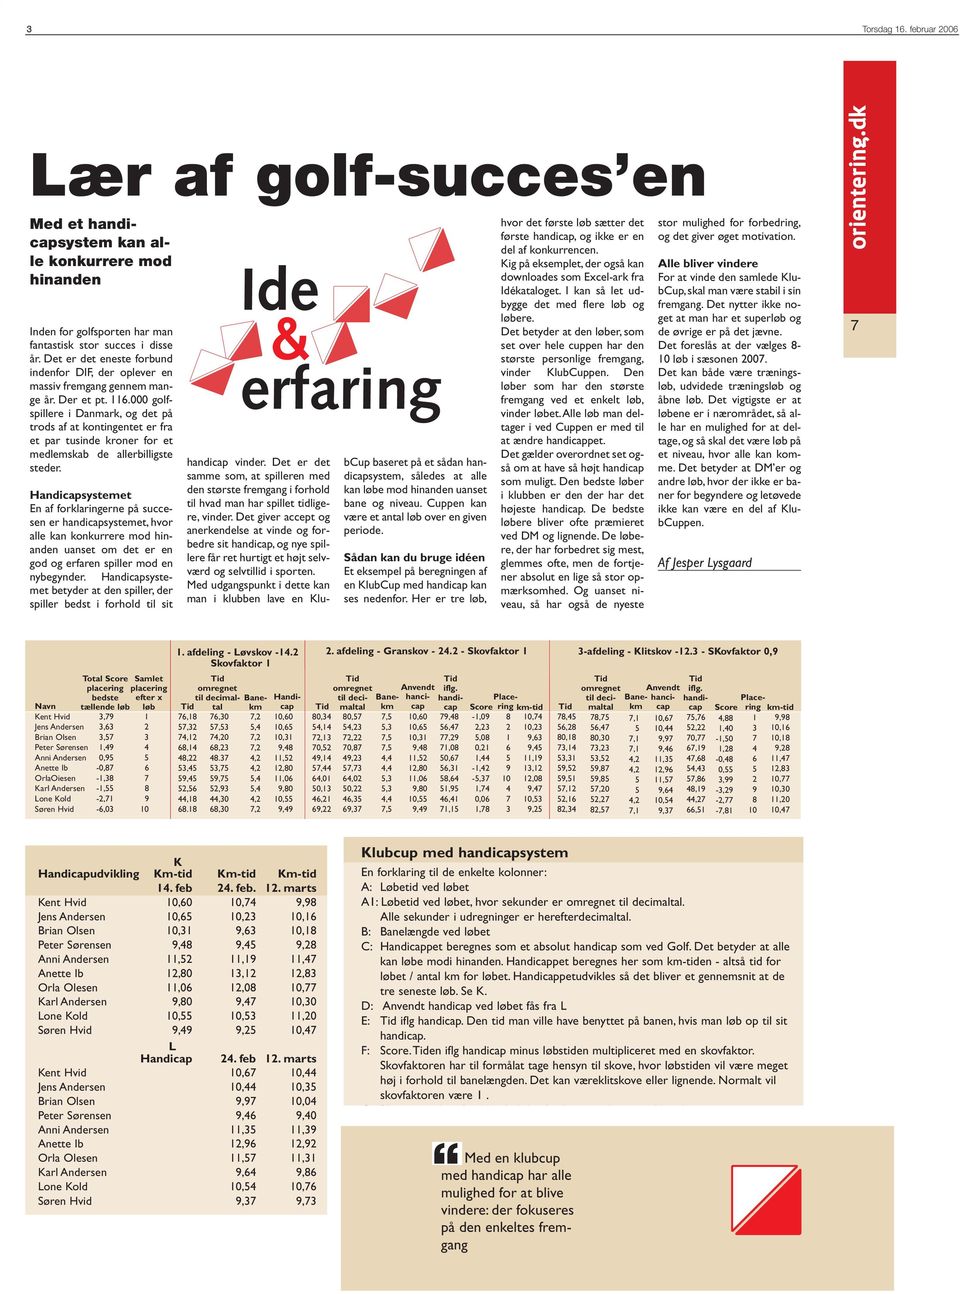 000 golfspillere i Danmark, og det på trods af at kontingentet er fra et par tusinde kroner for et medlemskab de allerbilligste steder.